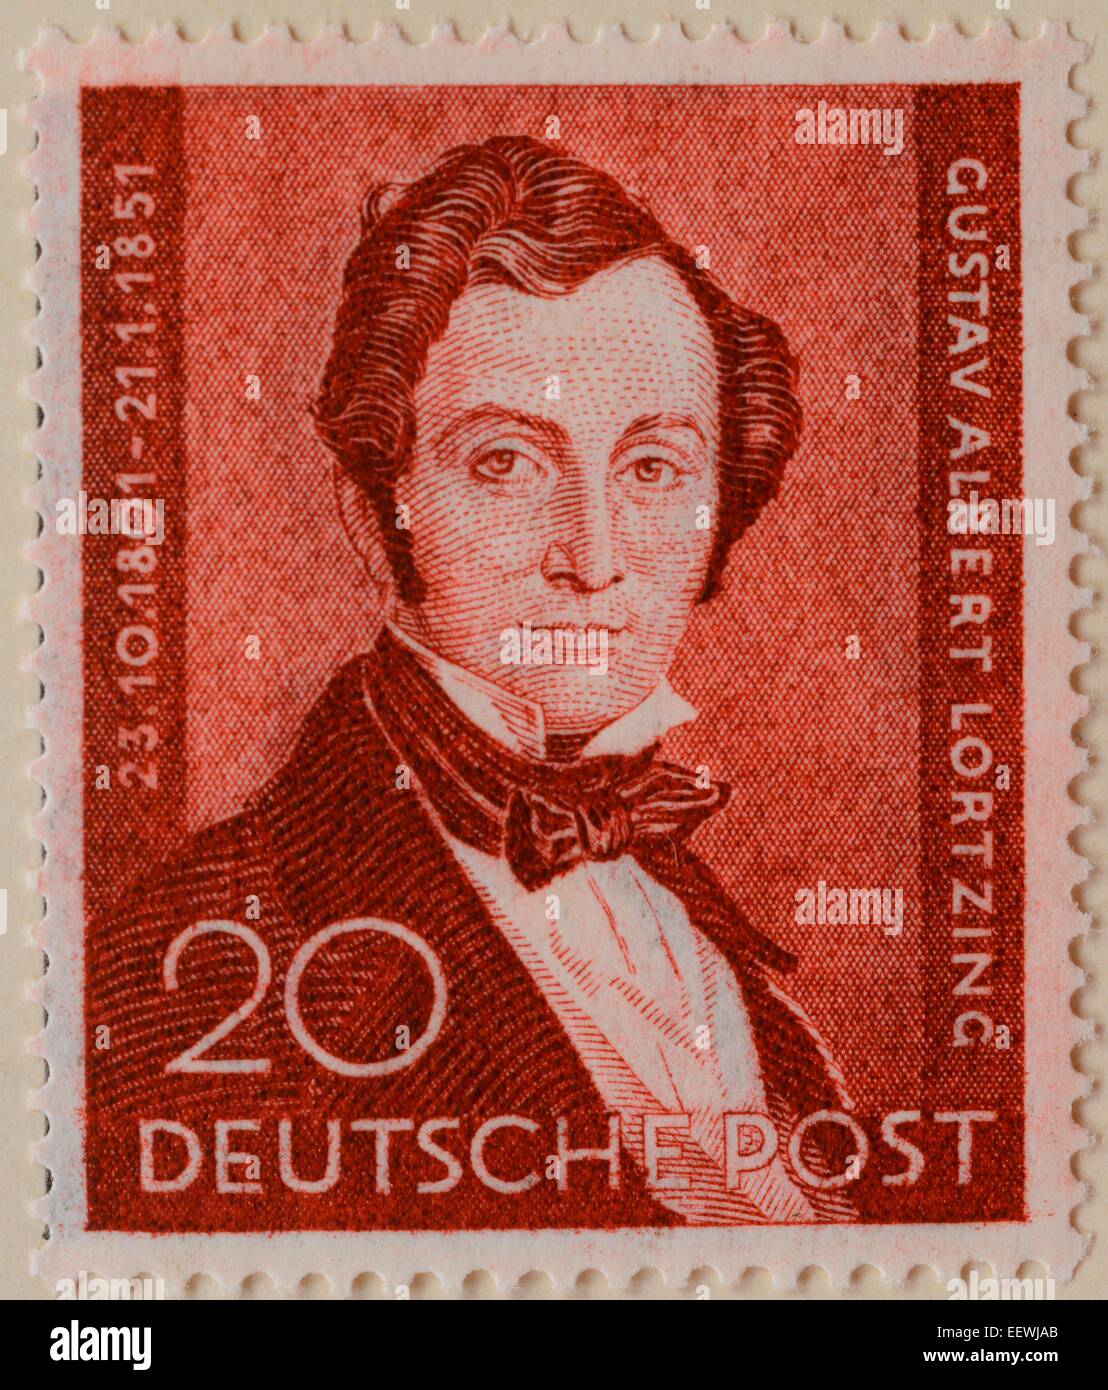 Albert Lortzing, ein deutscher Komponist, Schauspieler und Sänger, Porträt auf einer deutschen Briefmarke, 1951 Stockfoto